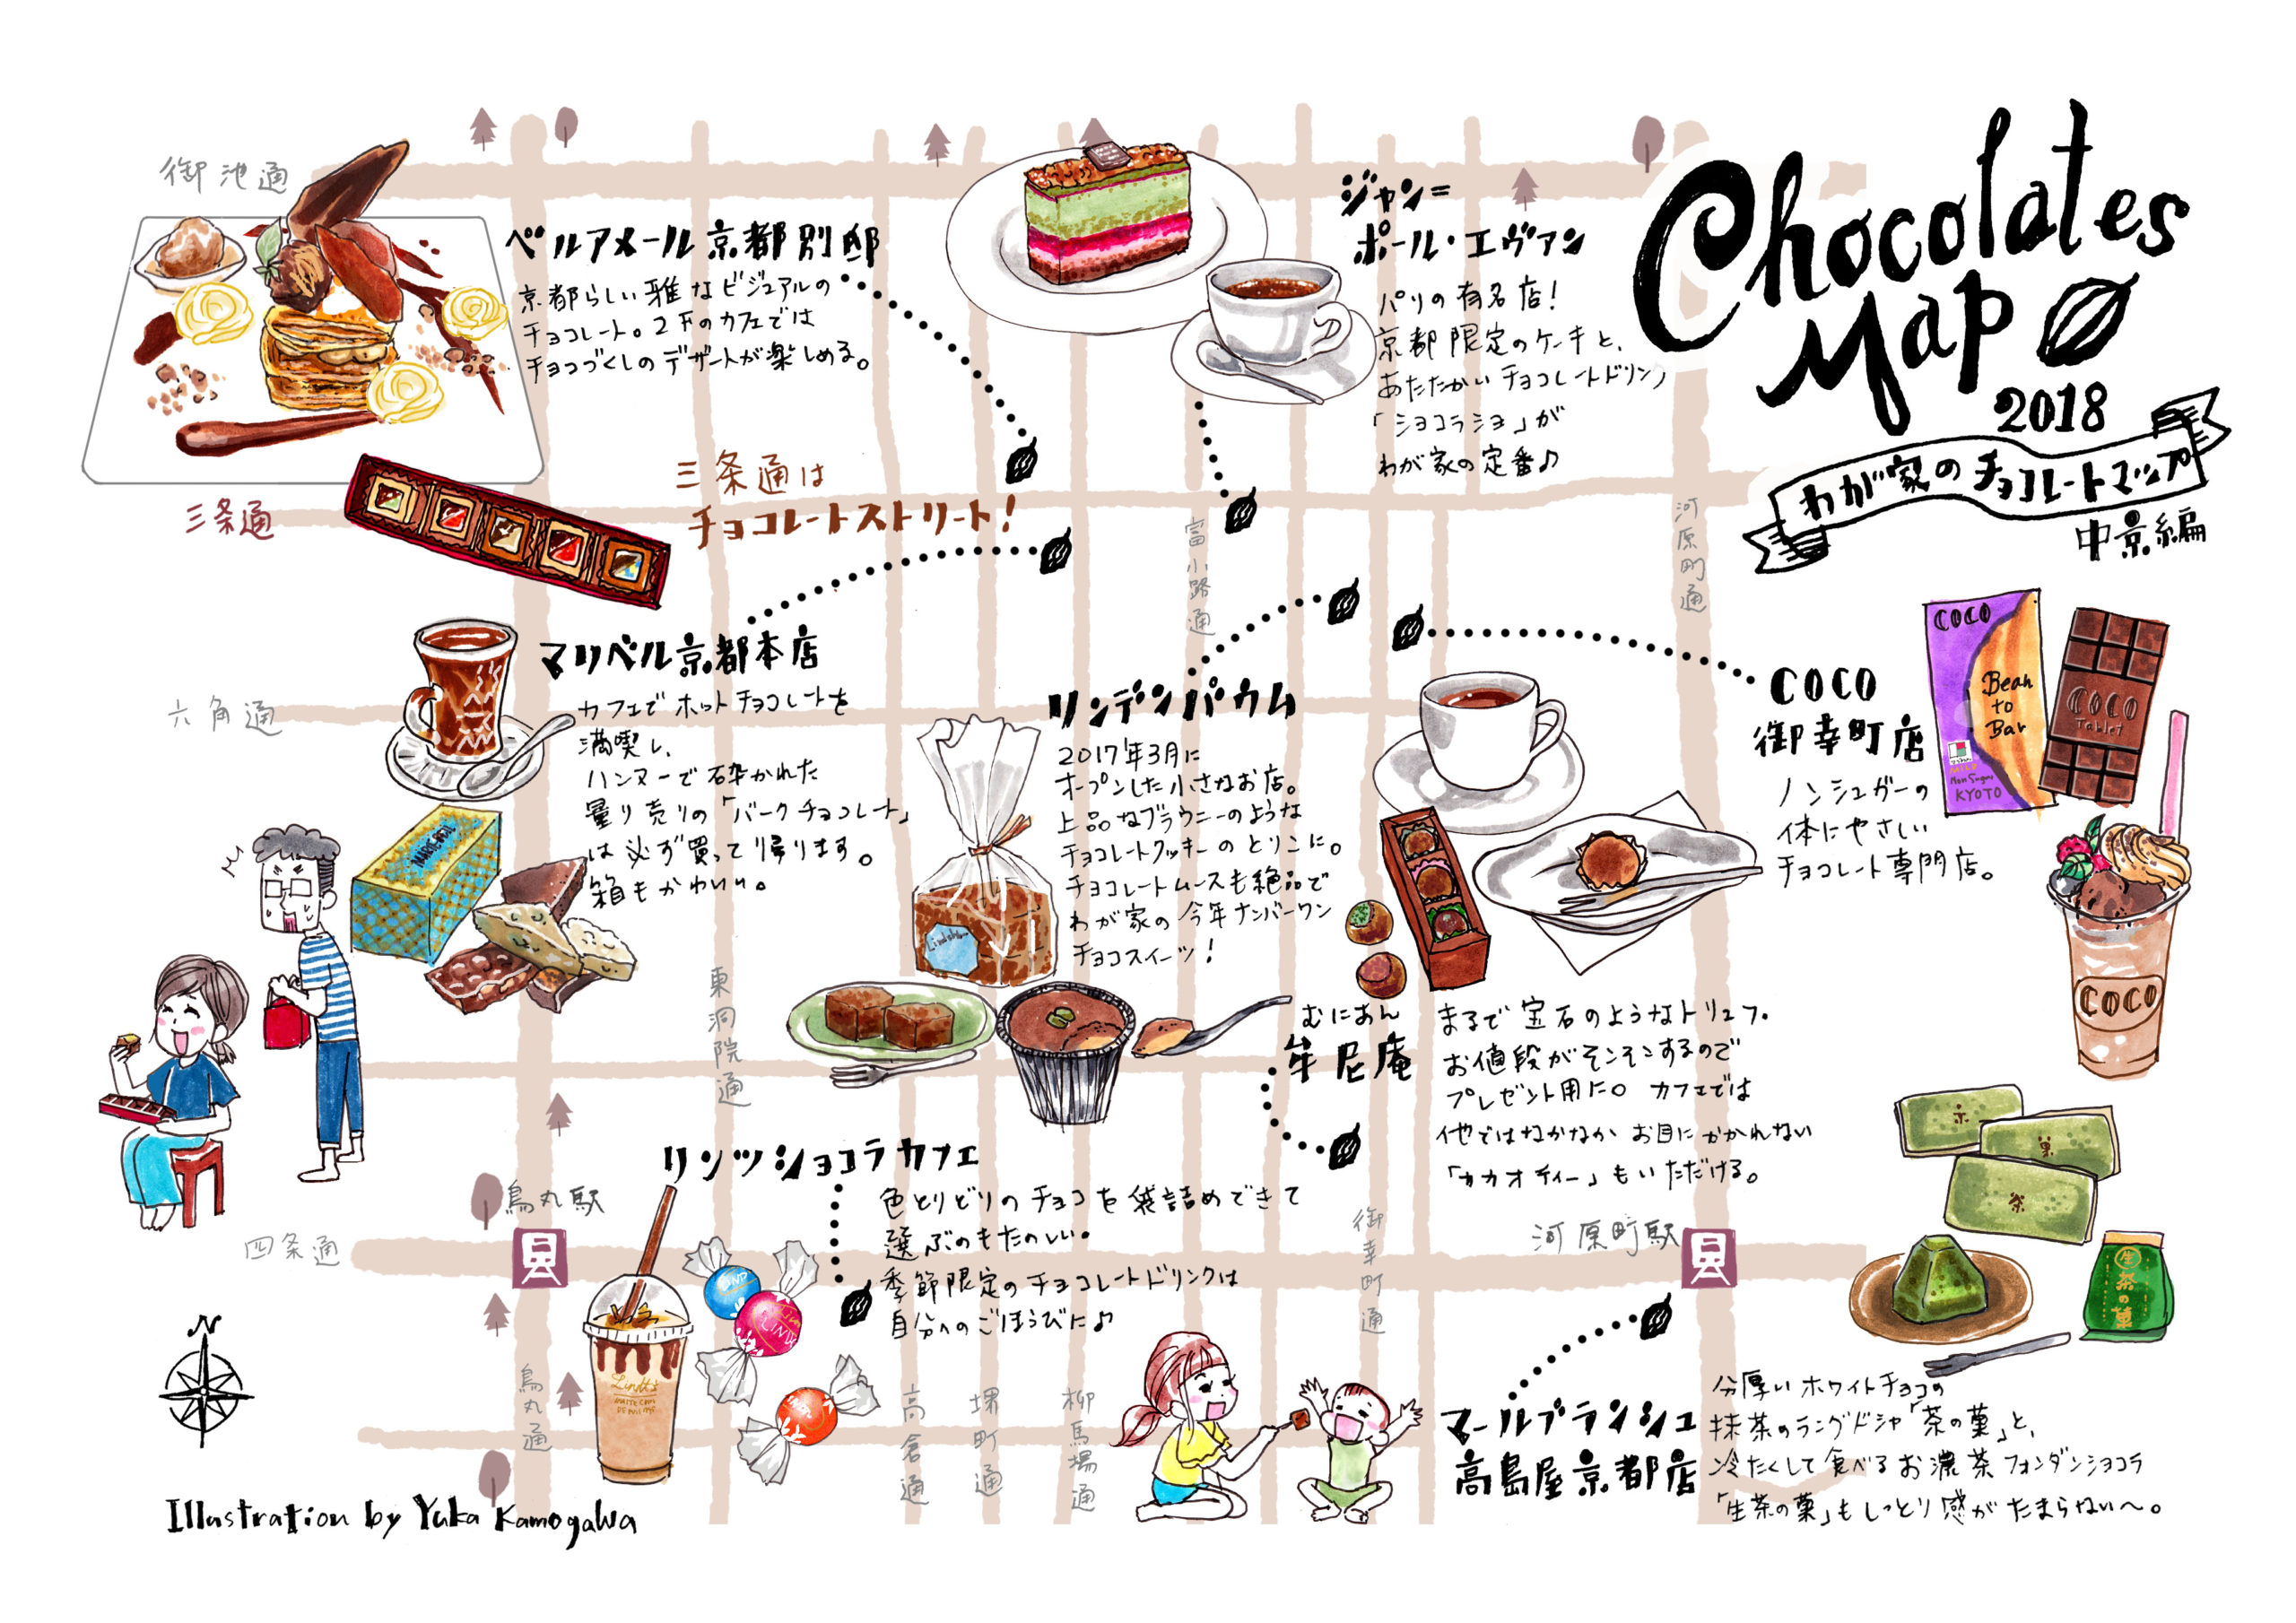 チョコレートマップ中京2018 - Chocolate Map of Nakagyo Ward Kyoto City